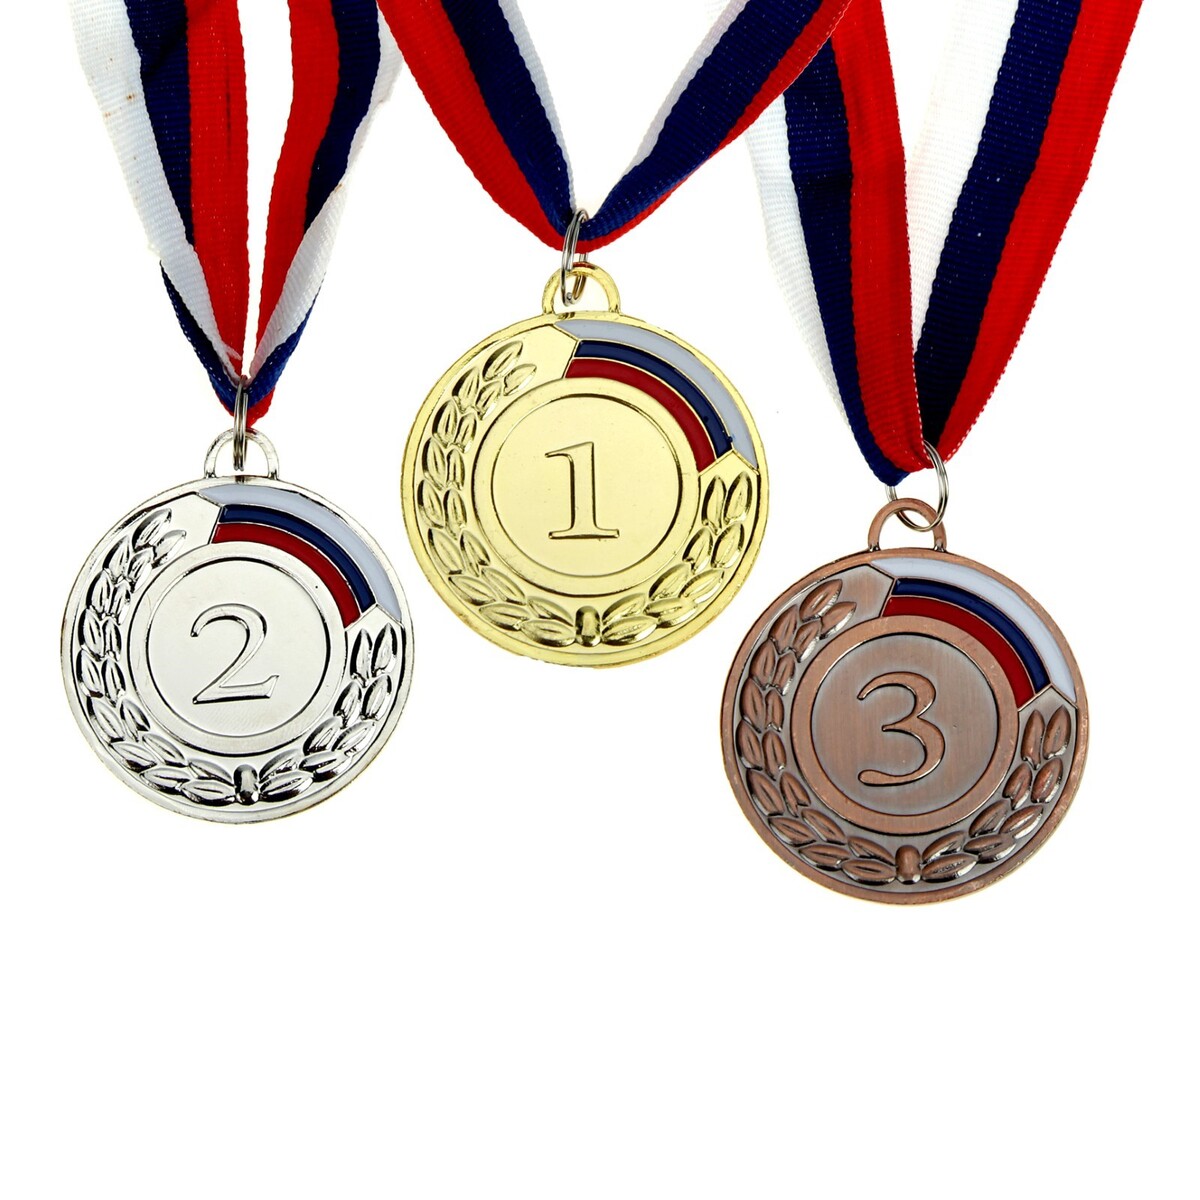 Медаль призовая 002 диам 5 см. 1 место, триколор. цвет зол. с лентой медаль призовая 182 диам 5 см 1 место триколор зол с лентой